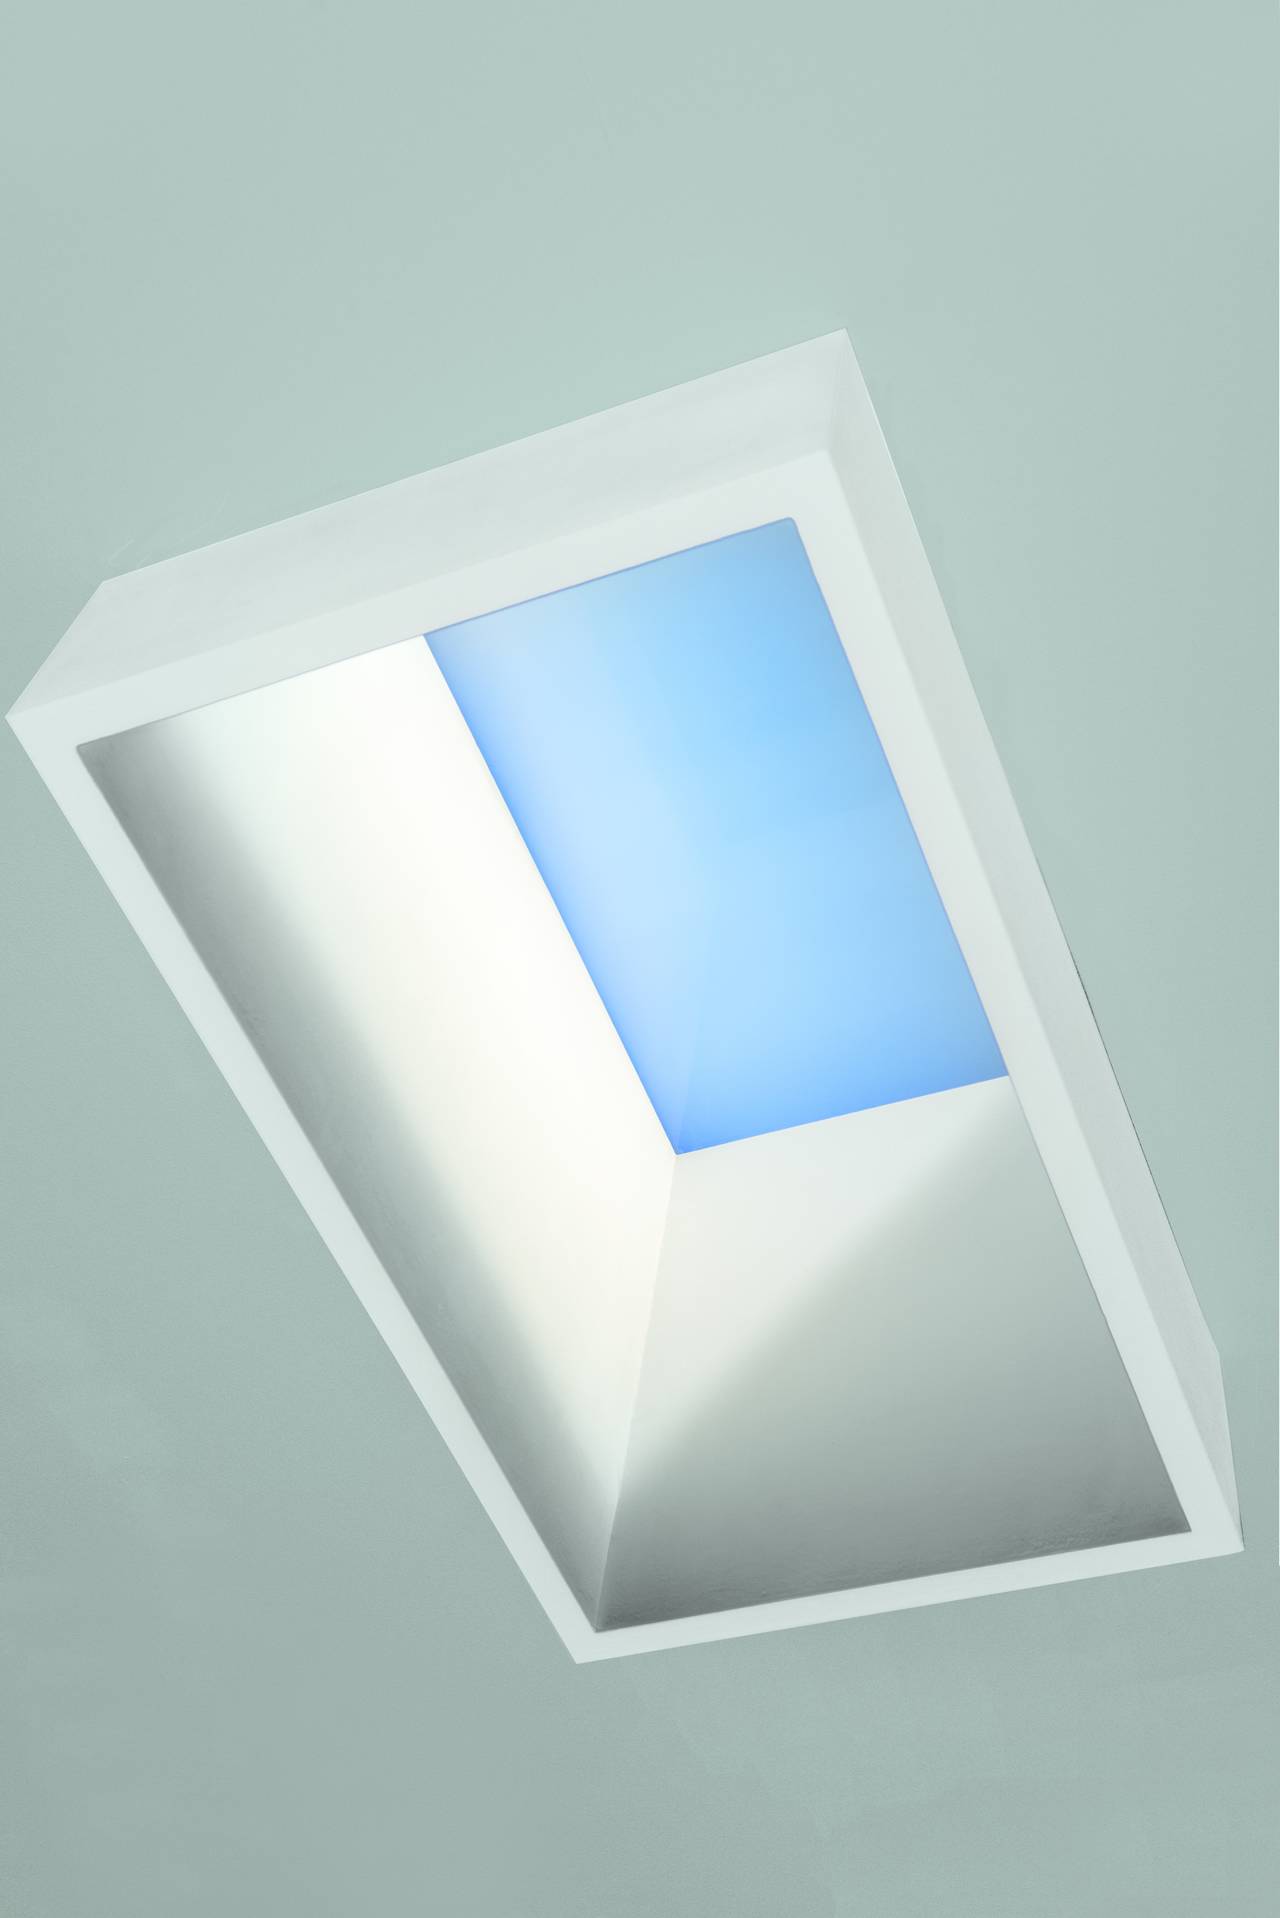 CoeLux® ST (Sky Tales), la nuova serie di finestre high-tech dalle dimensioni più compatte